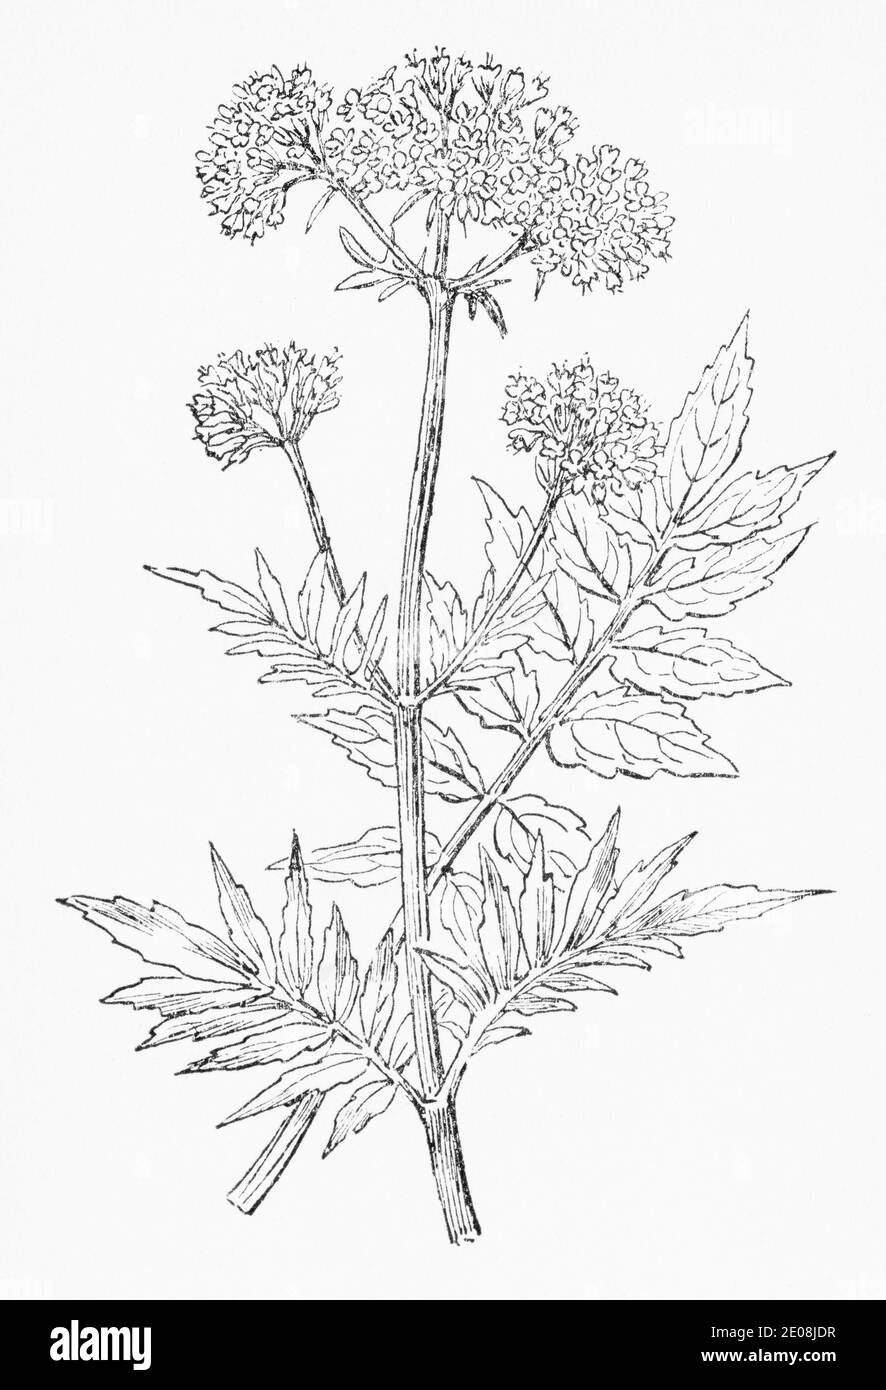 Ancienne gravure d'illustration botanique de Valerian / Valeriana officinalis. Plante médicinale traditionnelle. Voir Remarques Banque D'Images